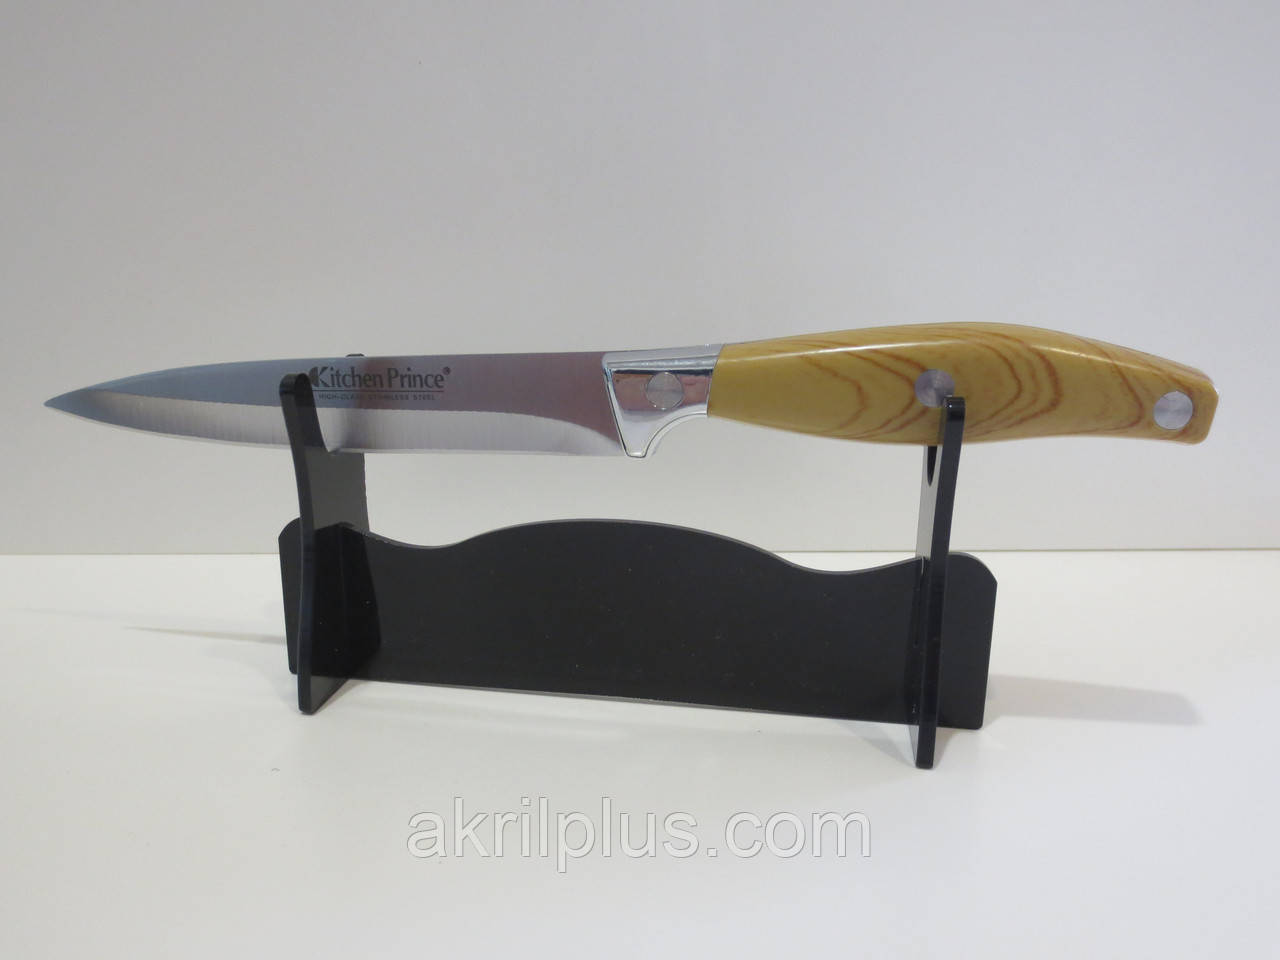 Оригінальна підставка для ножа на вітрину, фото 1